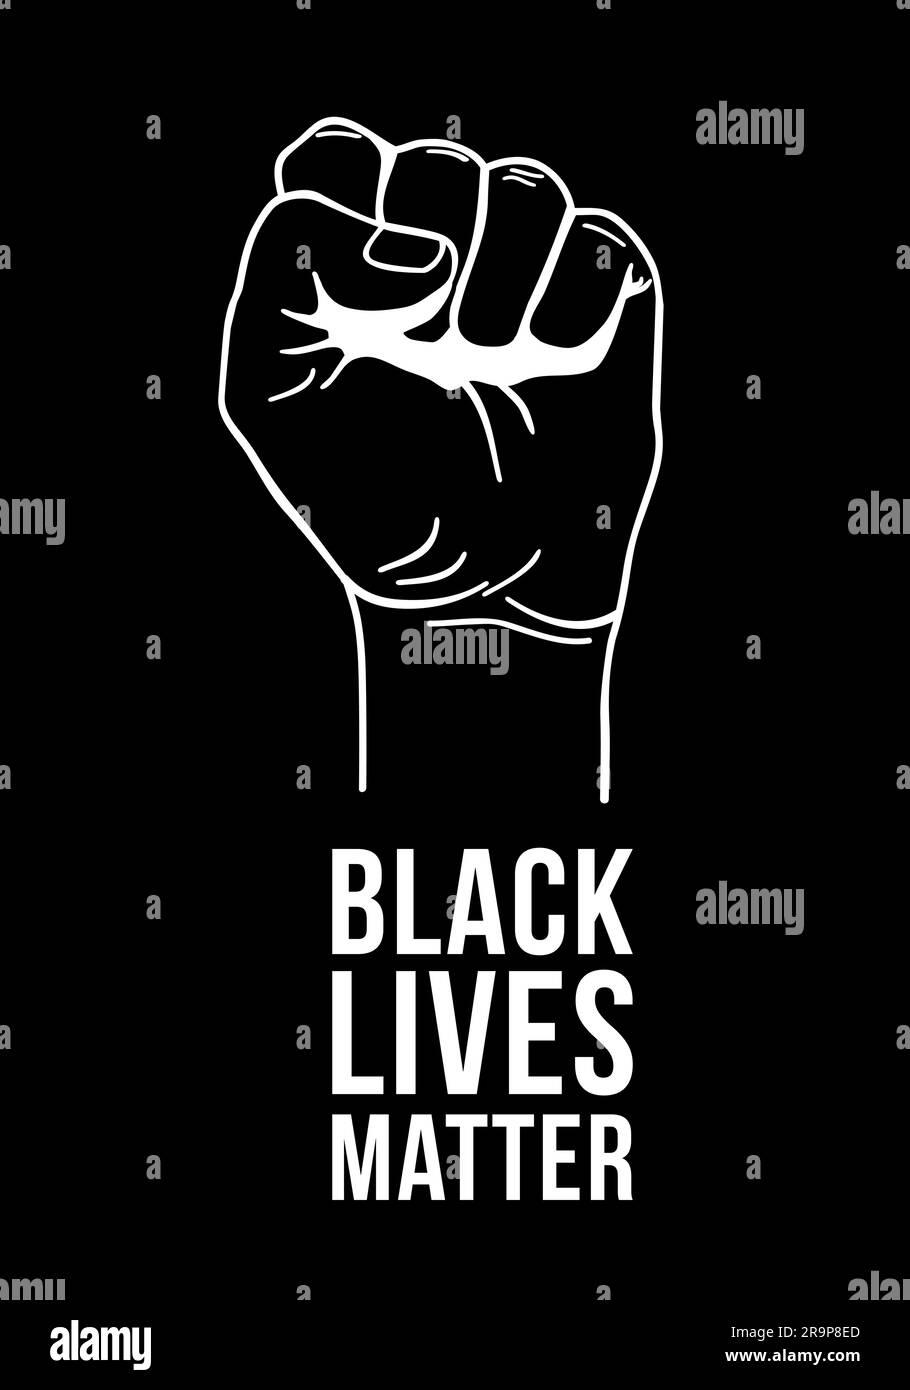 Illustrazione vettoriale del testo Black Lives Matter, pugno stretto tenuto alto per protesta. Mano sollevata isolata. Concetto di diritti umani e uguaglianza. Sticke Illustrazione Vettoriale